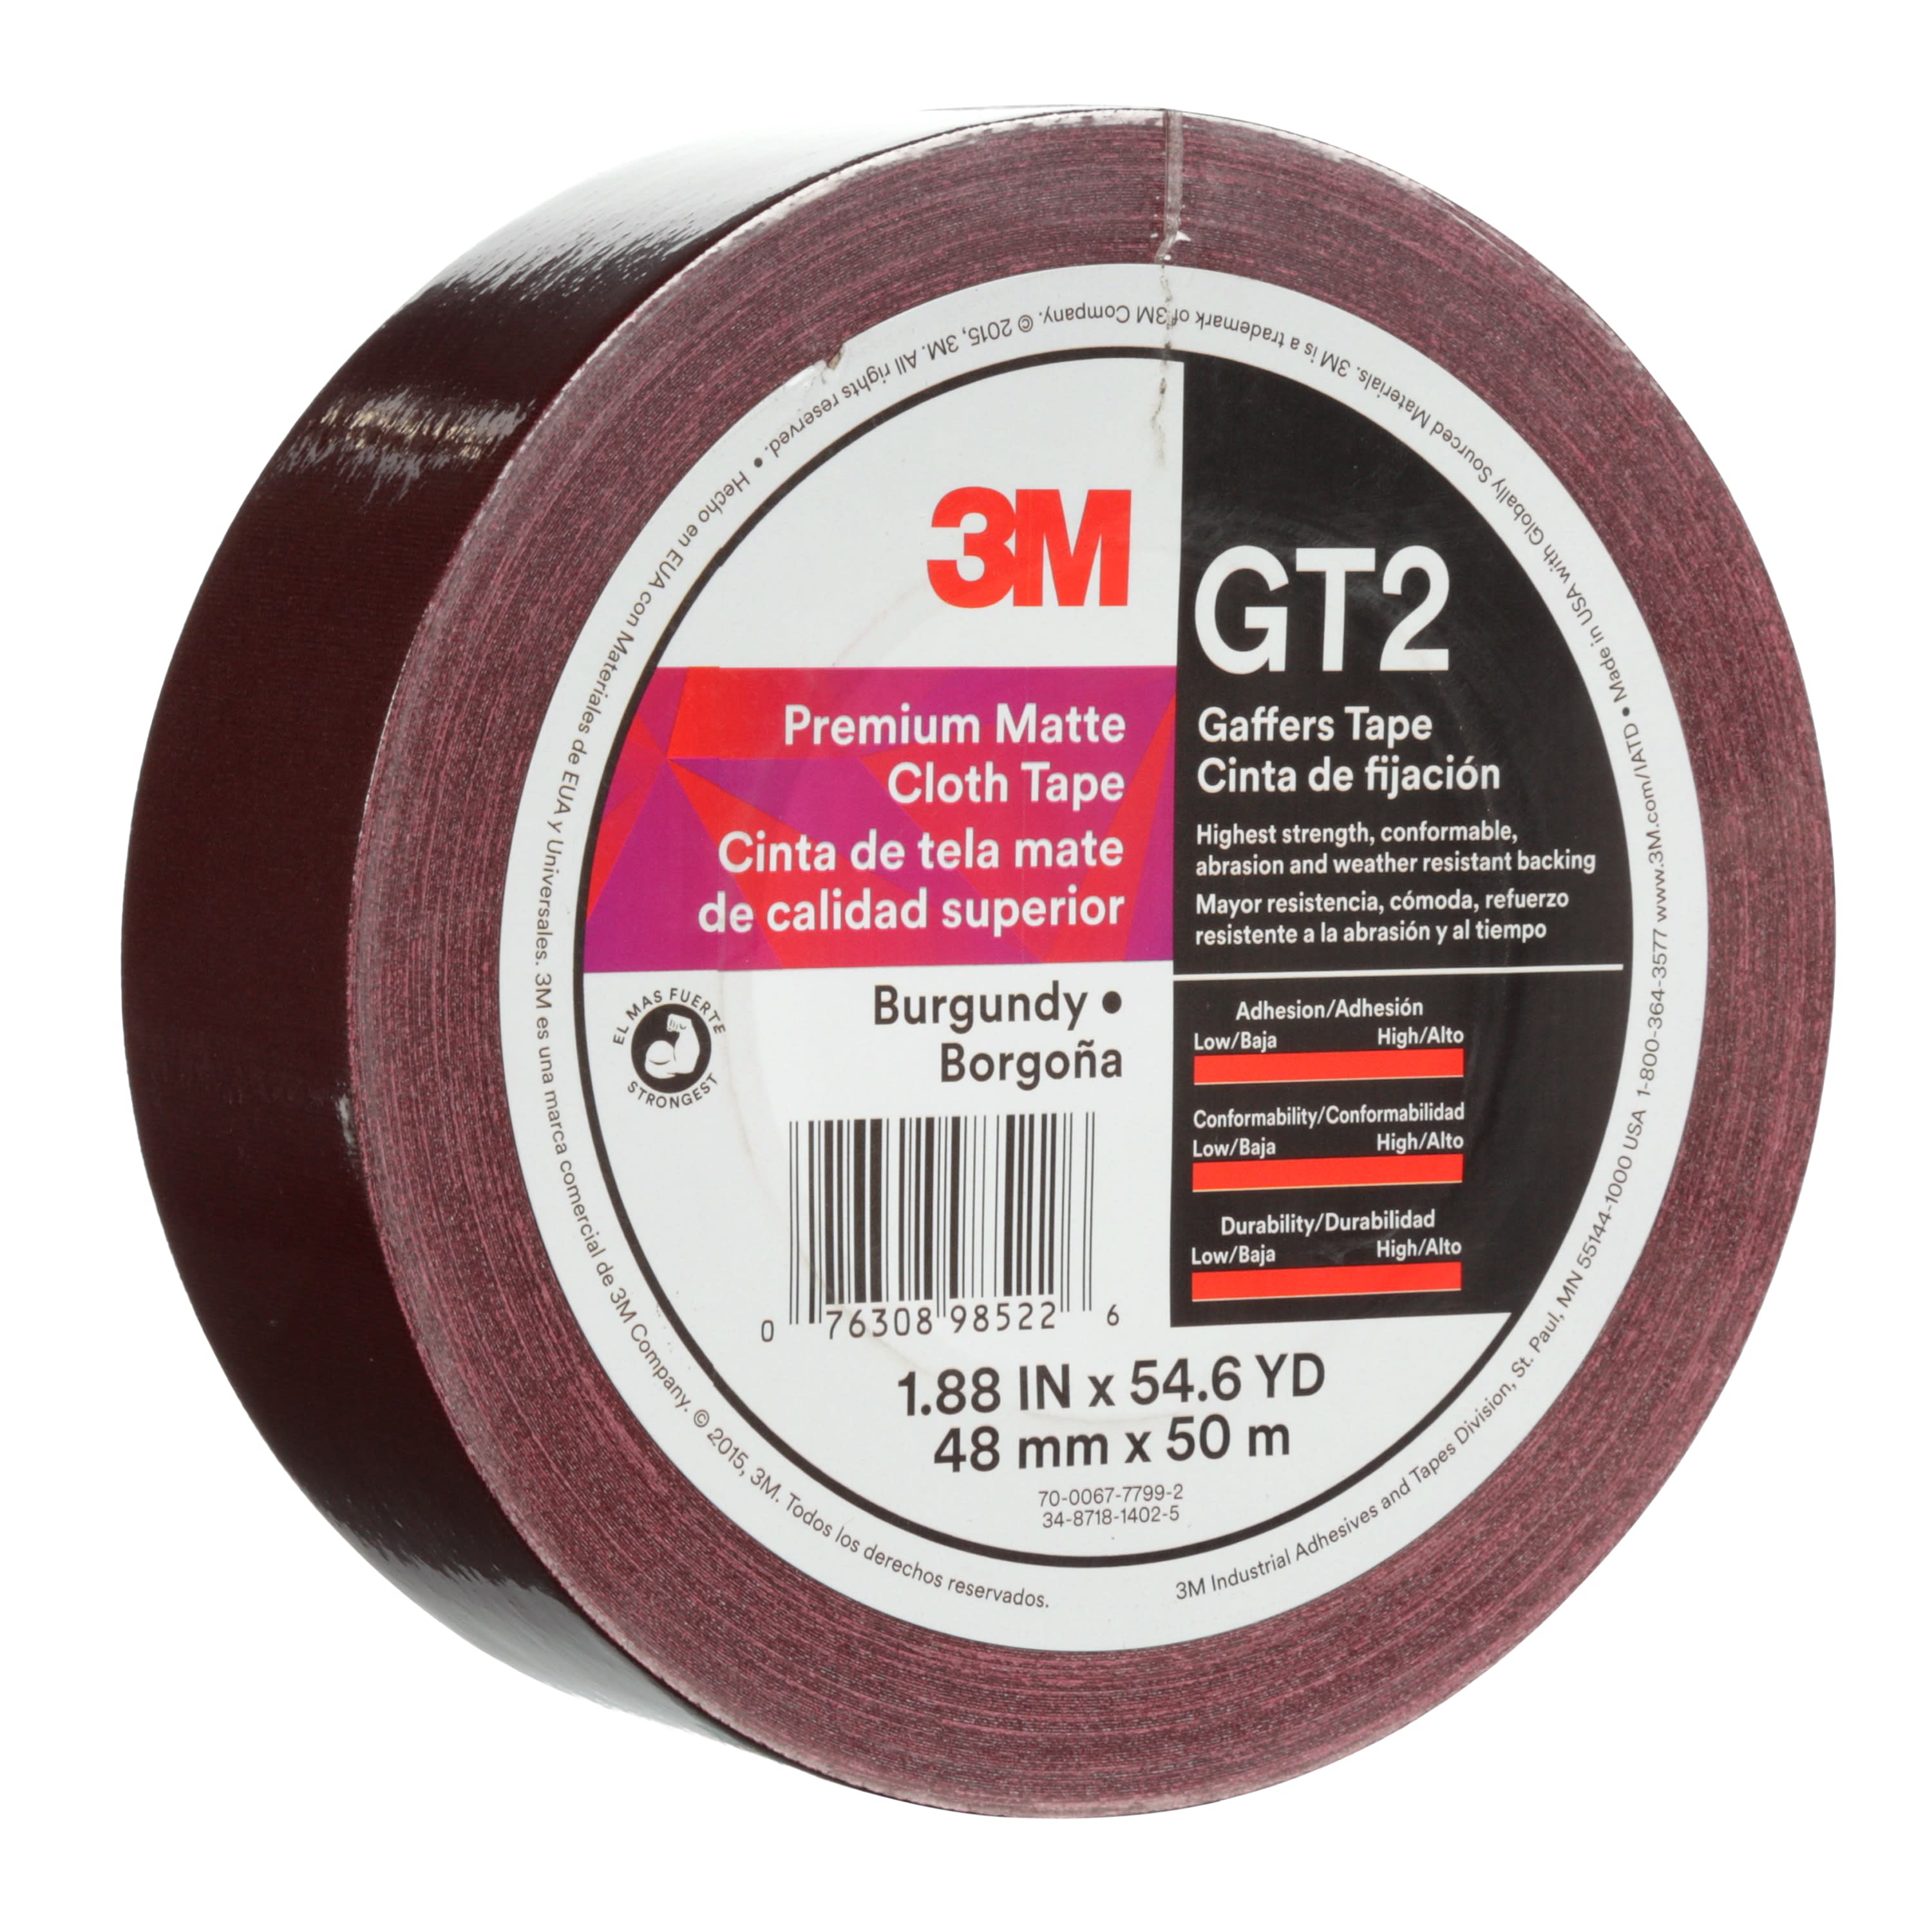 3M™ Premium Matte Cloth (Gaffers) Tape GT2, Burgundy, 48 mm x 50 m, 11
mil, 24 per case